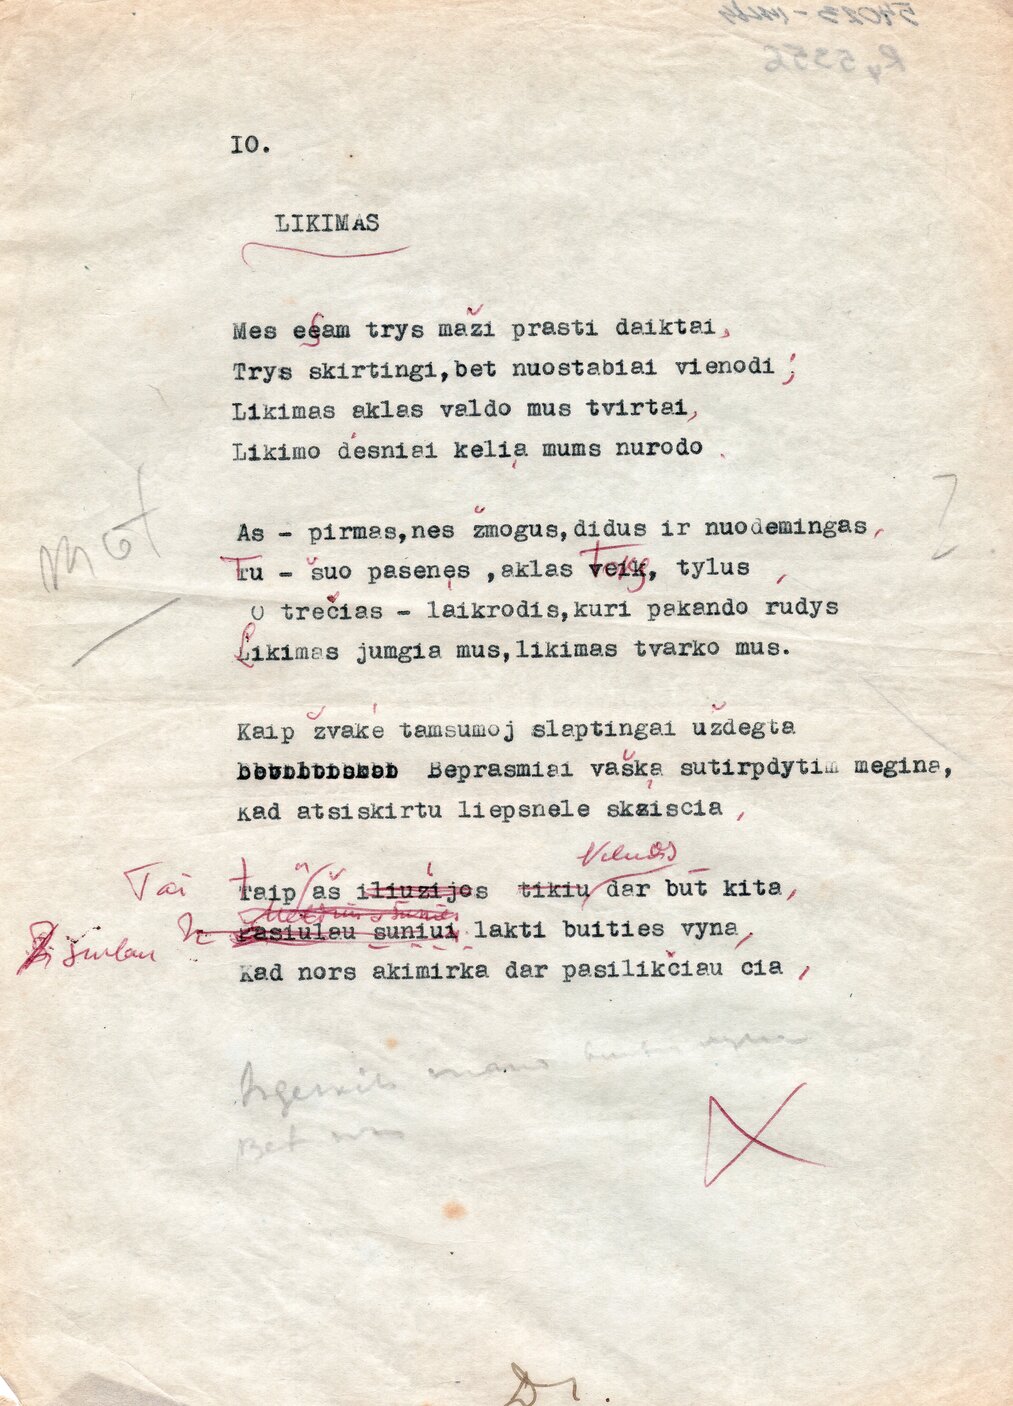 R. Portelos eil. Likimas vertimas į lietuvių kalbą. Išvertė P. Babickas, Brazilija, apie 1955 m. MLLM 54023